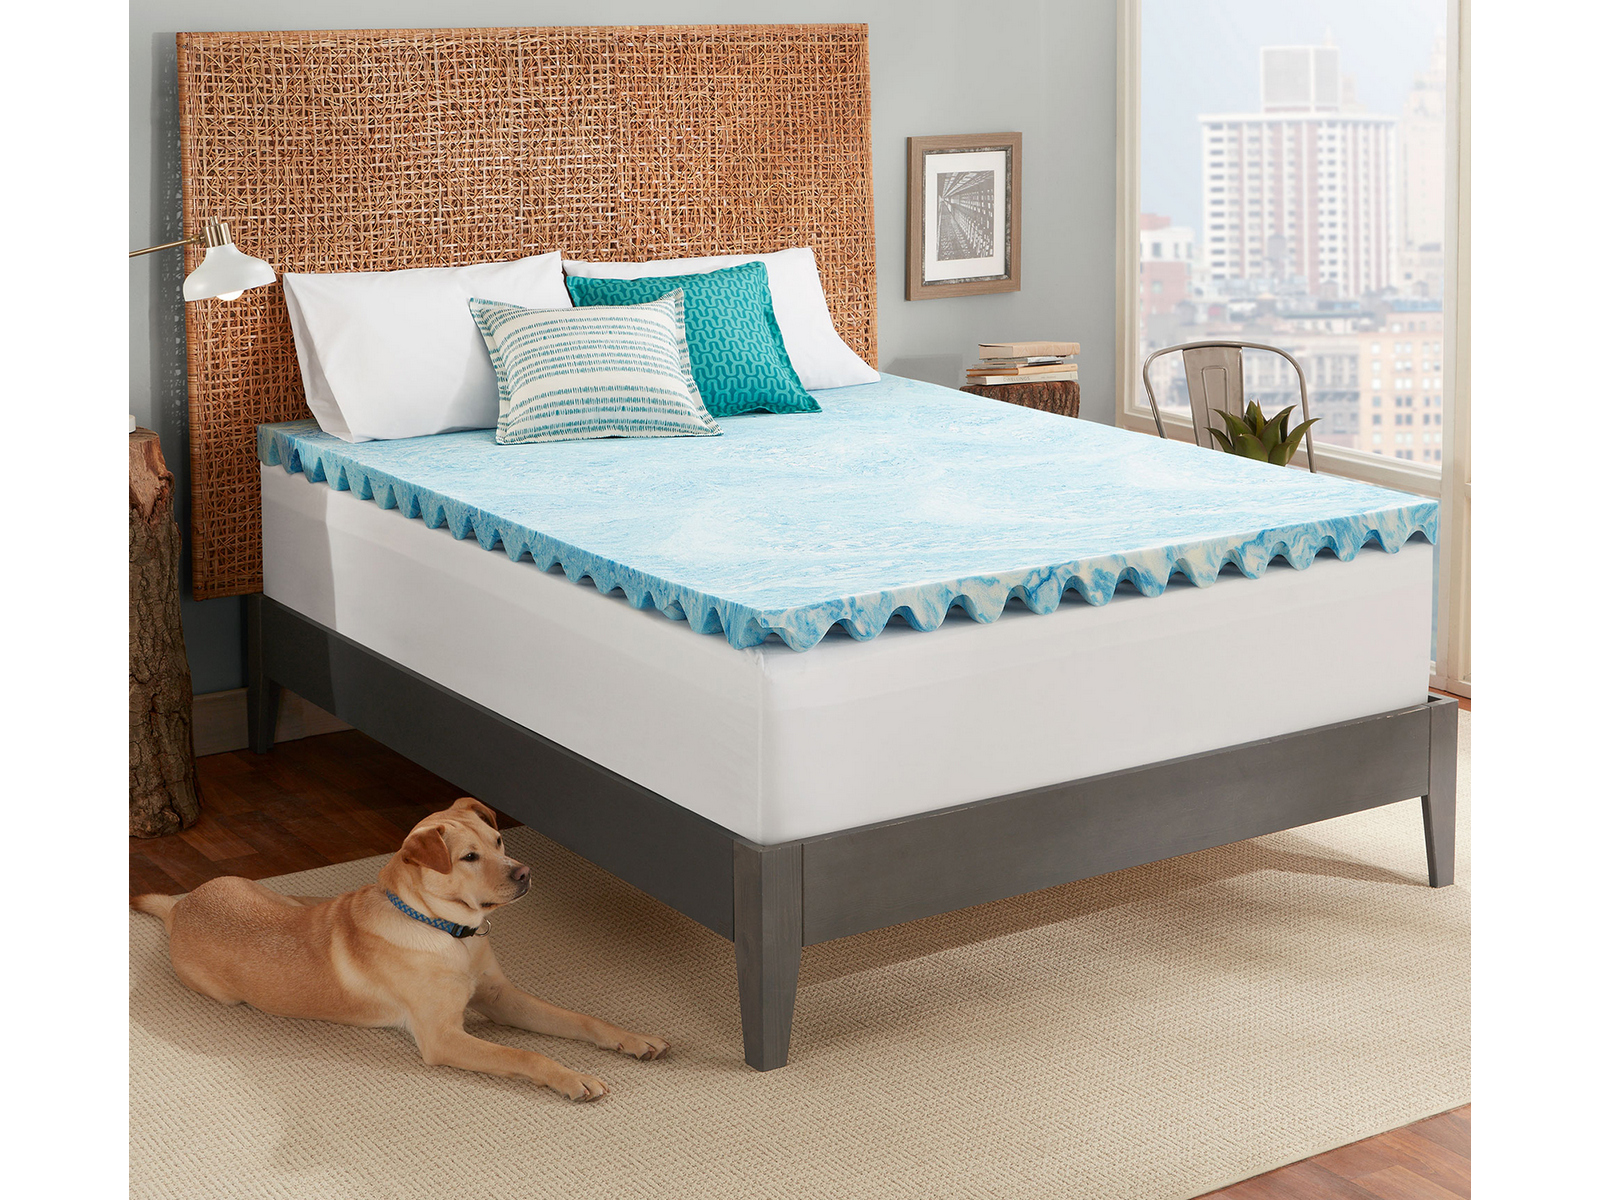 sleepy's hybrid firm mattress reviews